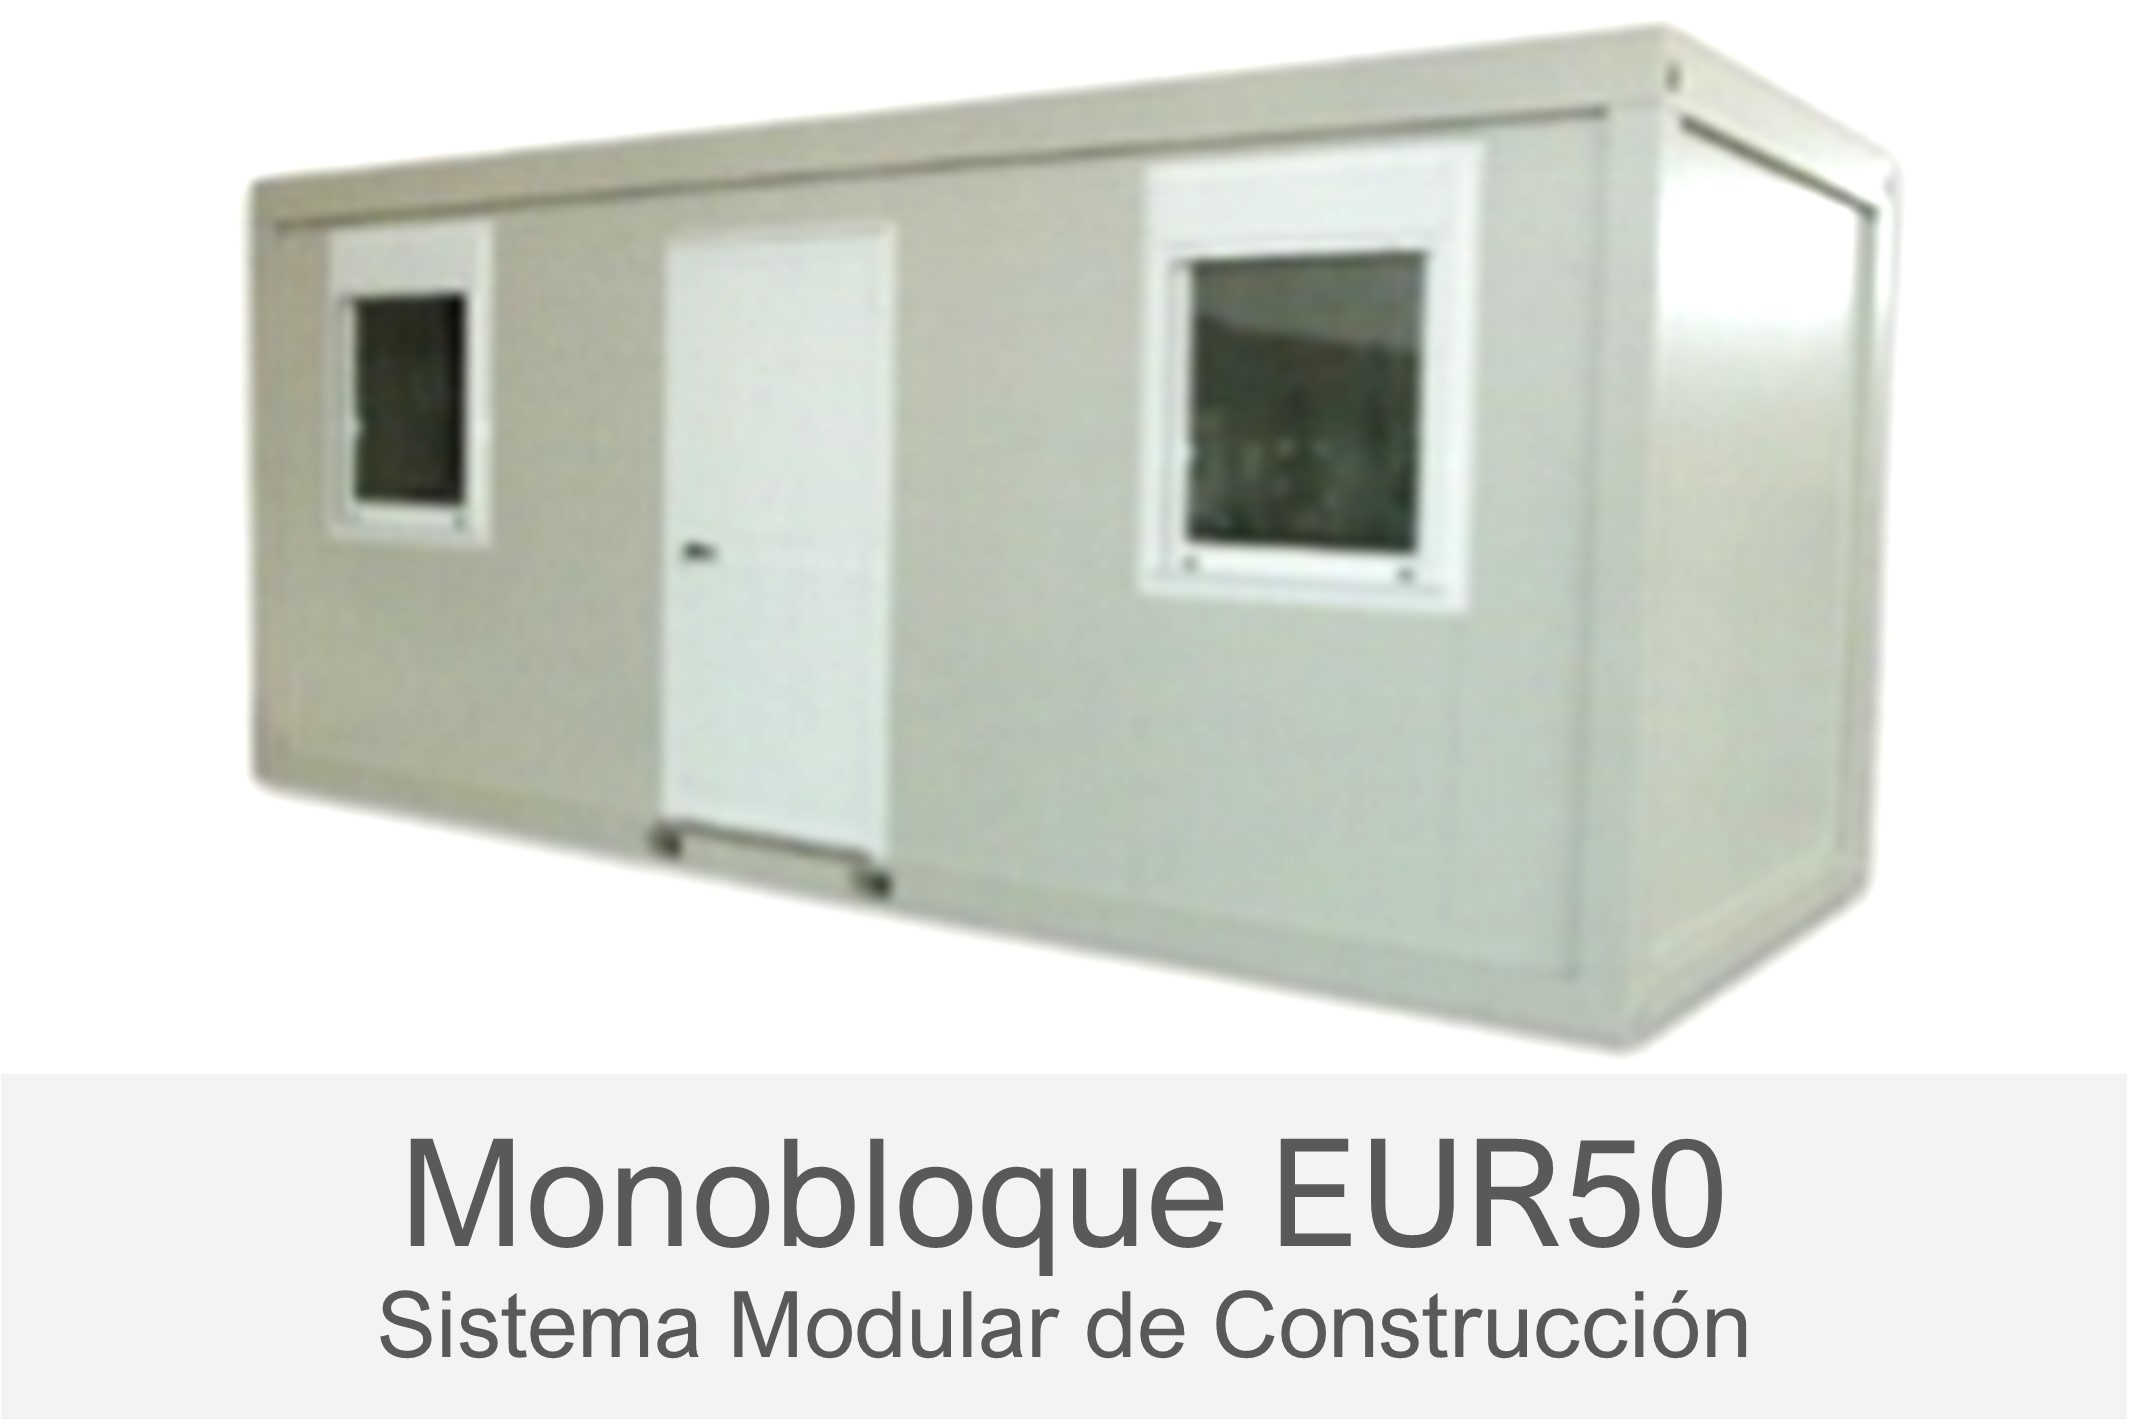 Monobloque - Construcción Modular - - Oficinas móviles - EUR50